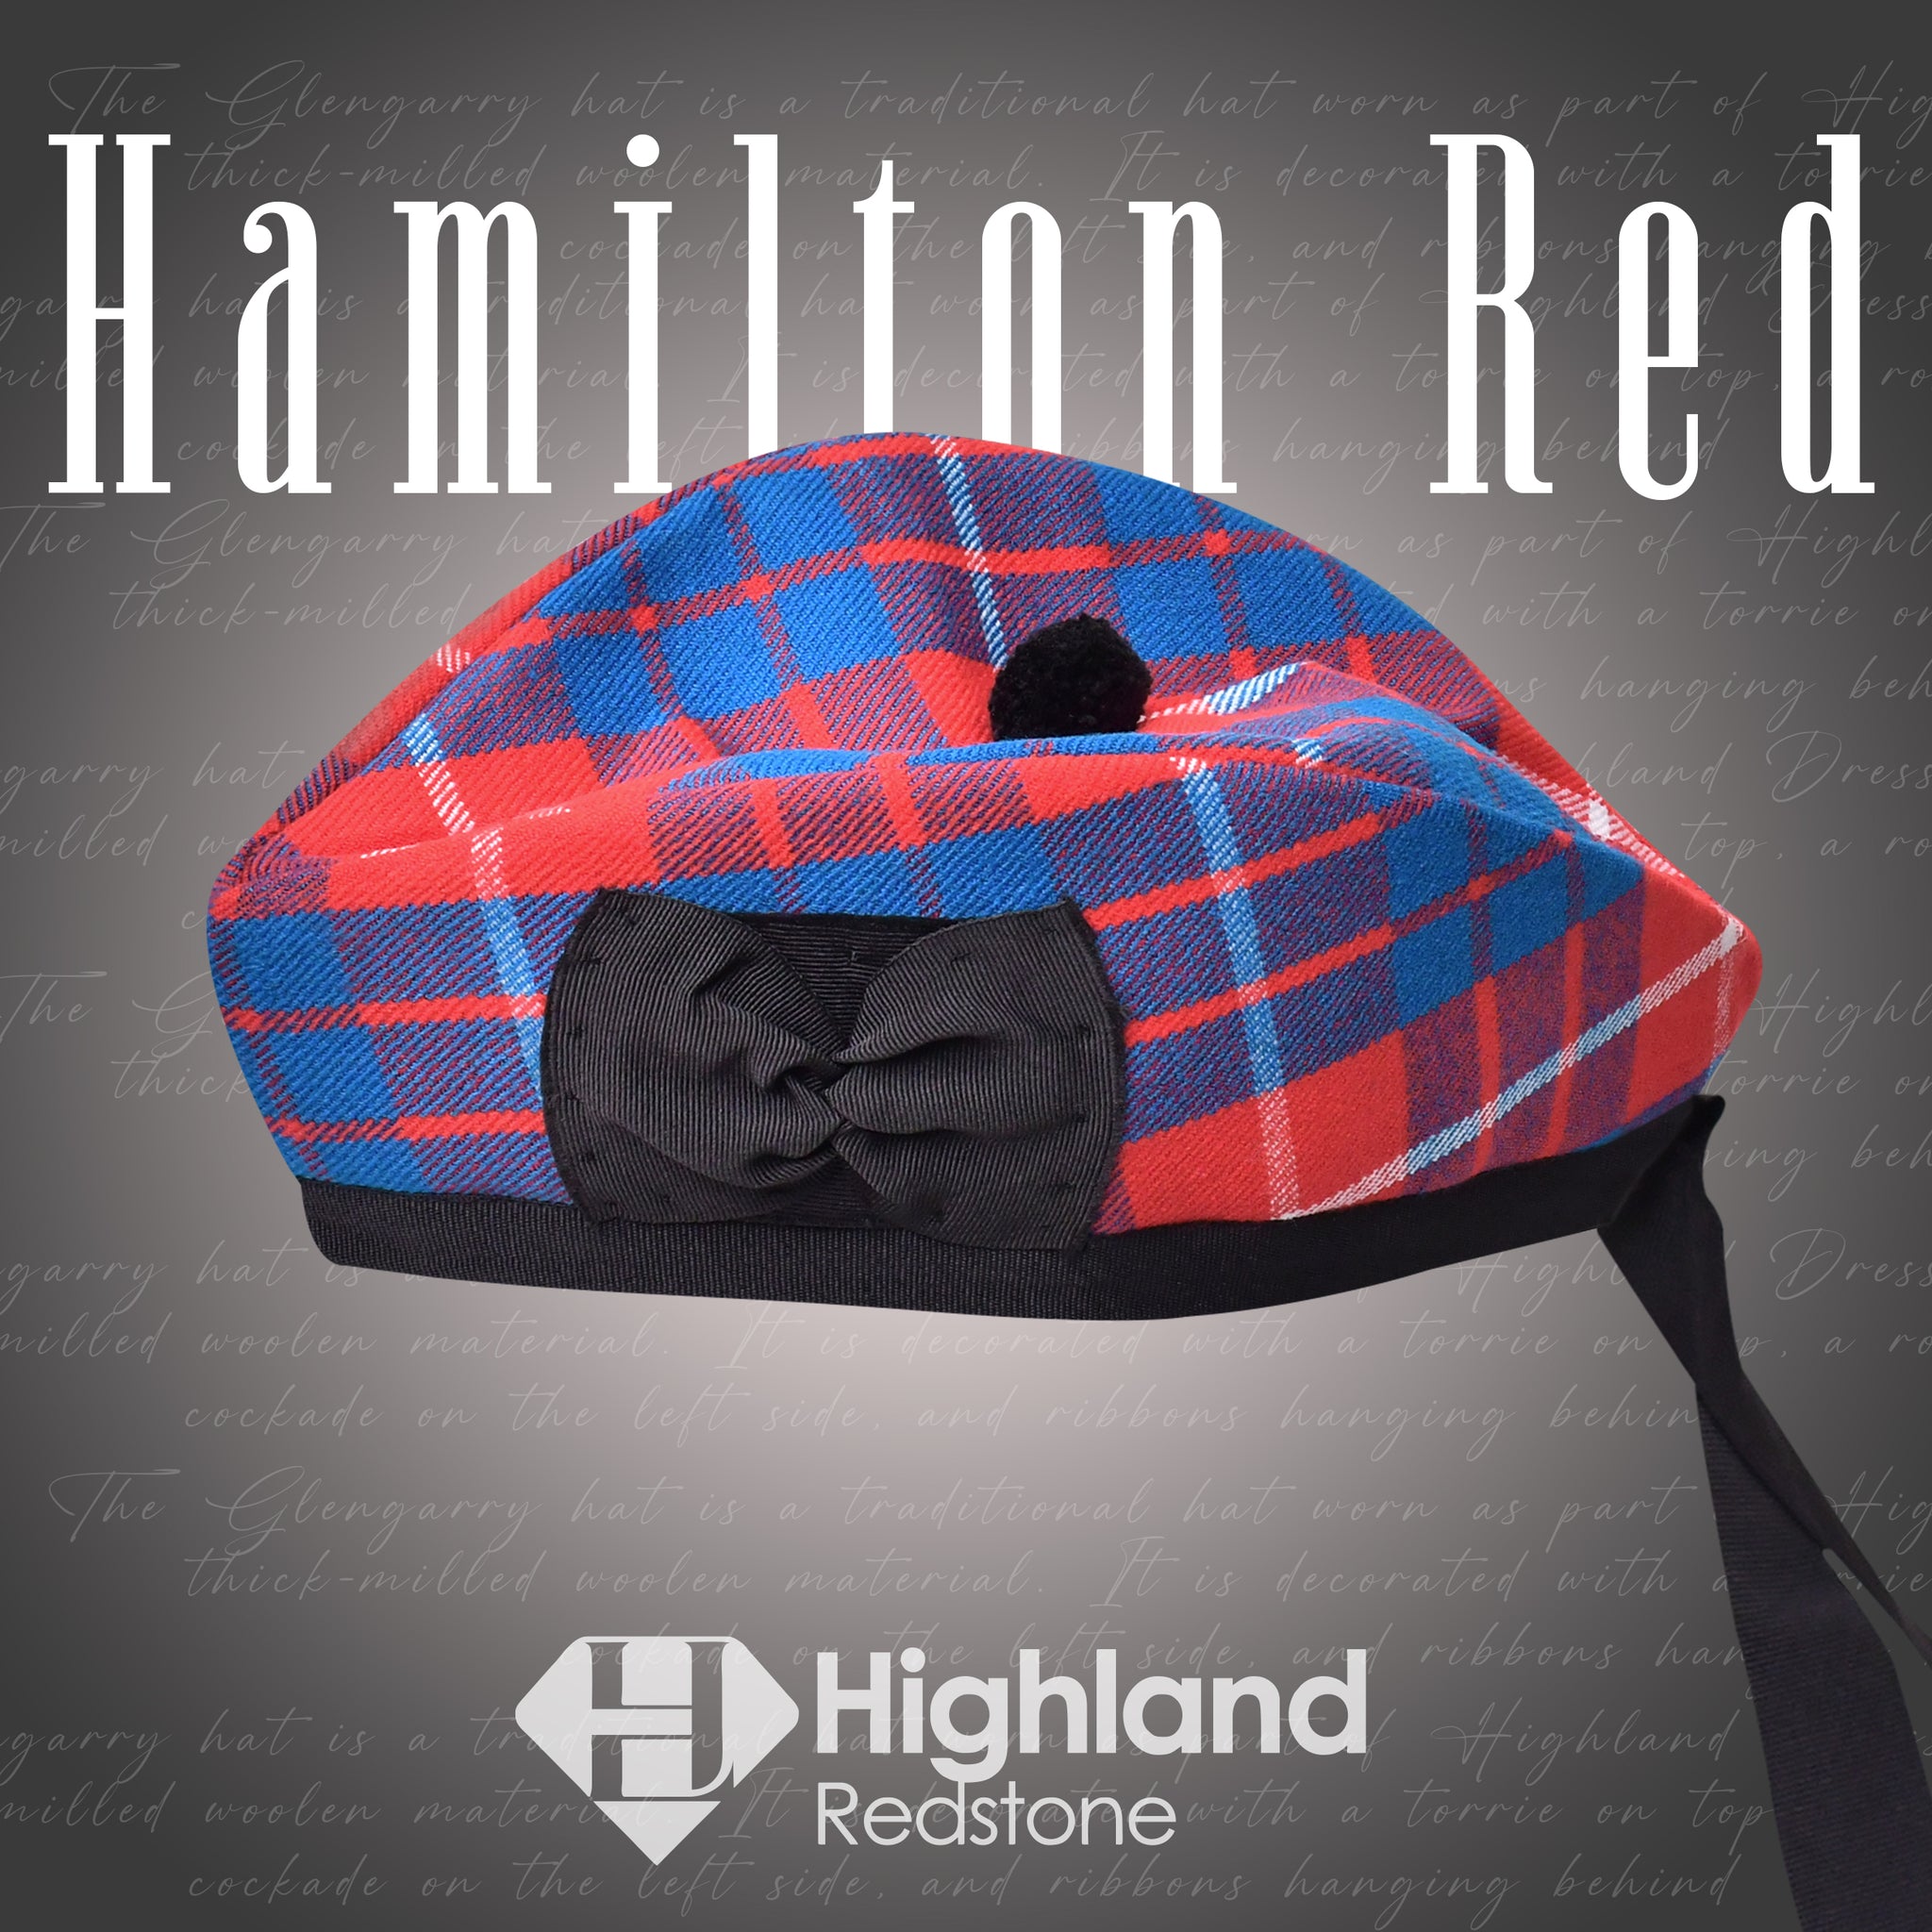 Hamilton Red Glengarry